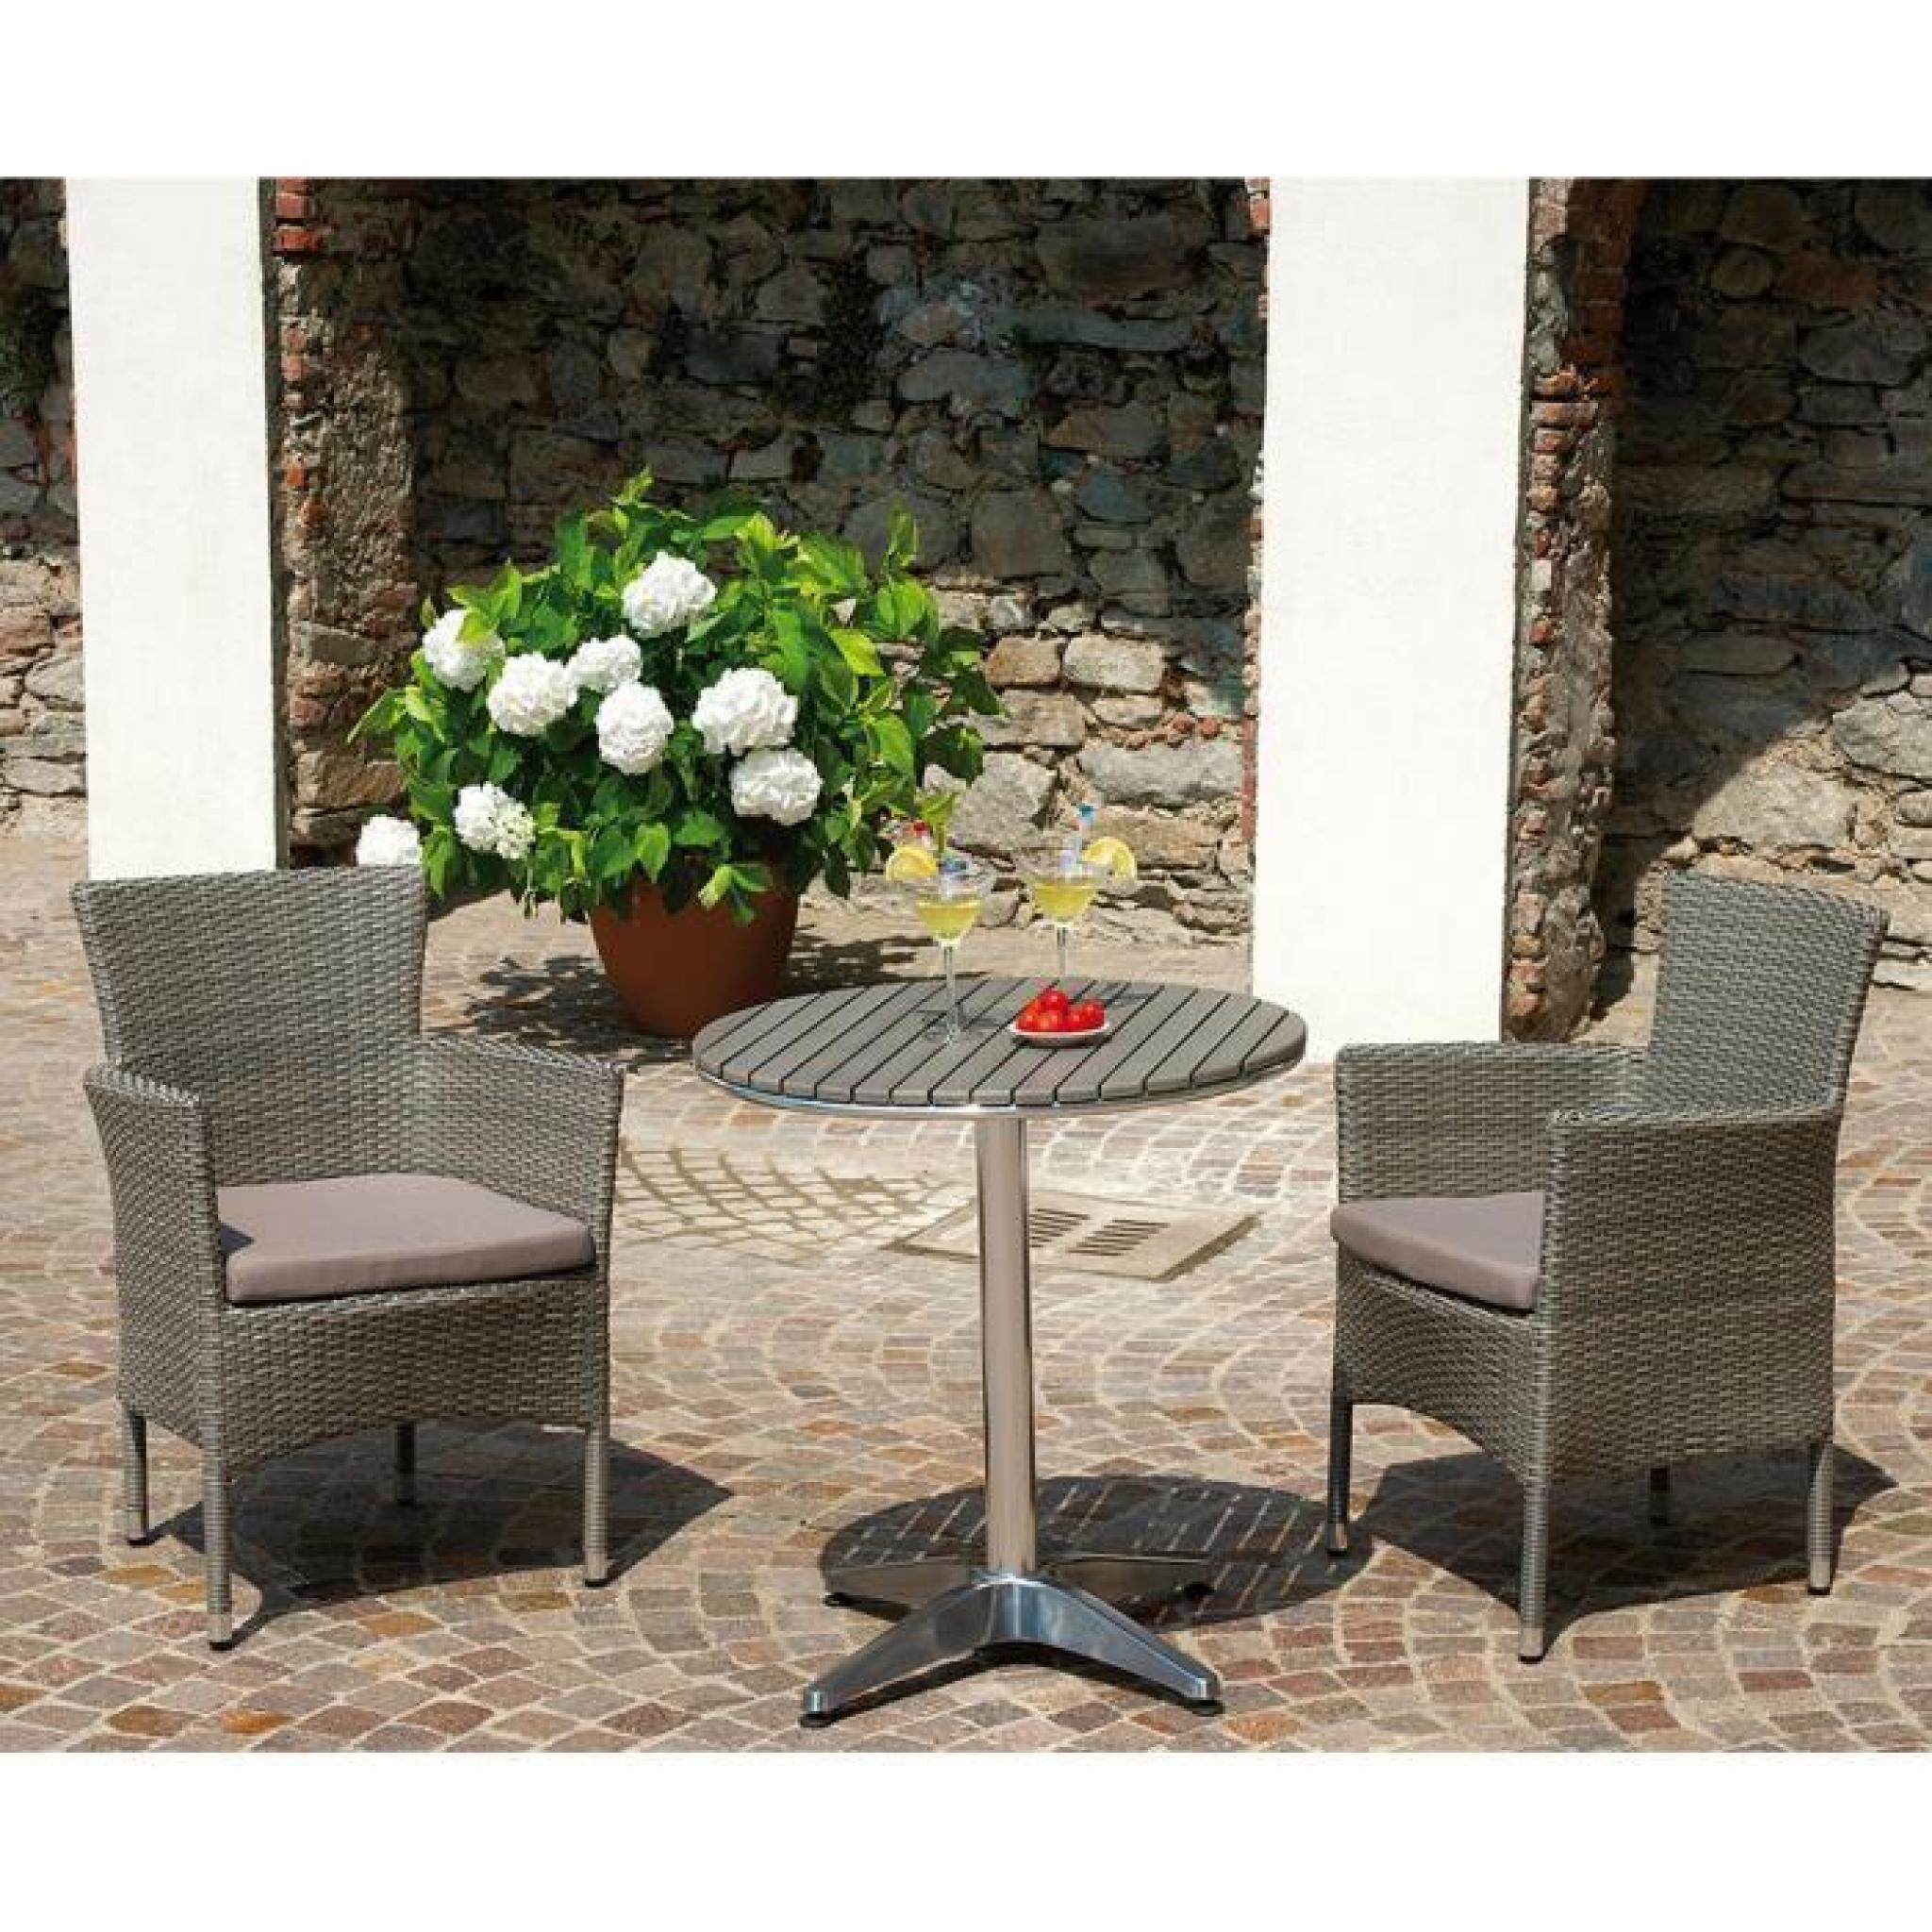 Table jardin en aluminium avec plateau en résine wood coloris havane - Dim : H 72 x L 70 x P 70 cm pas cher